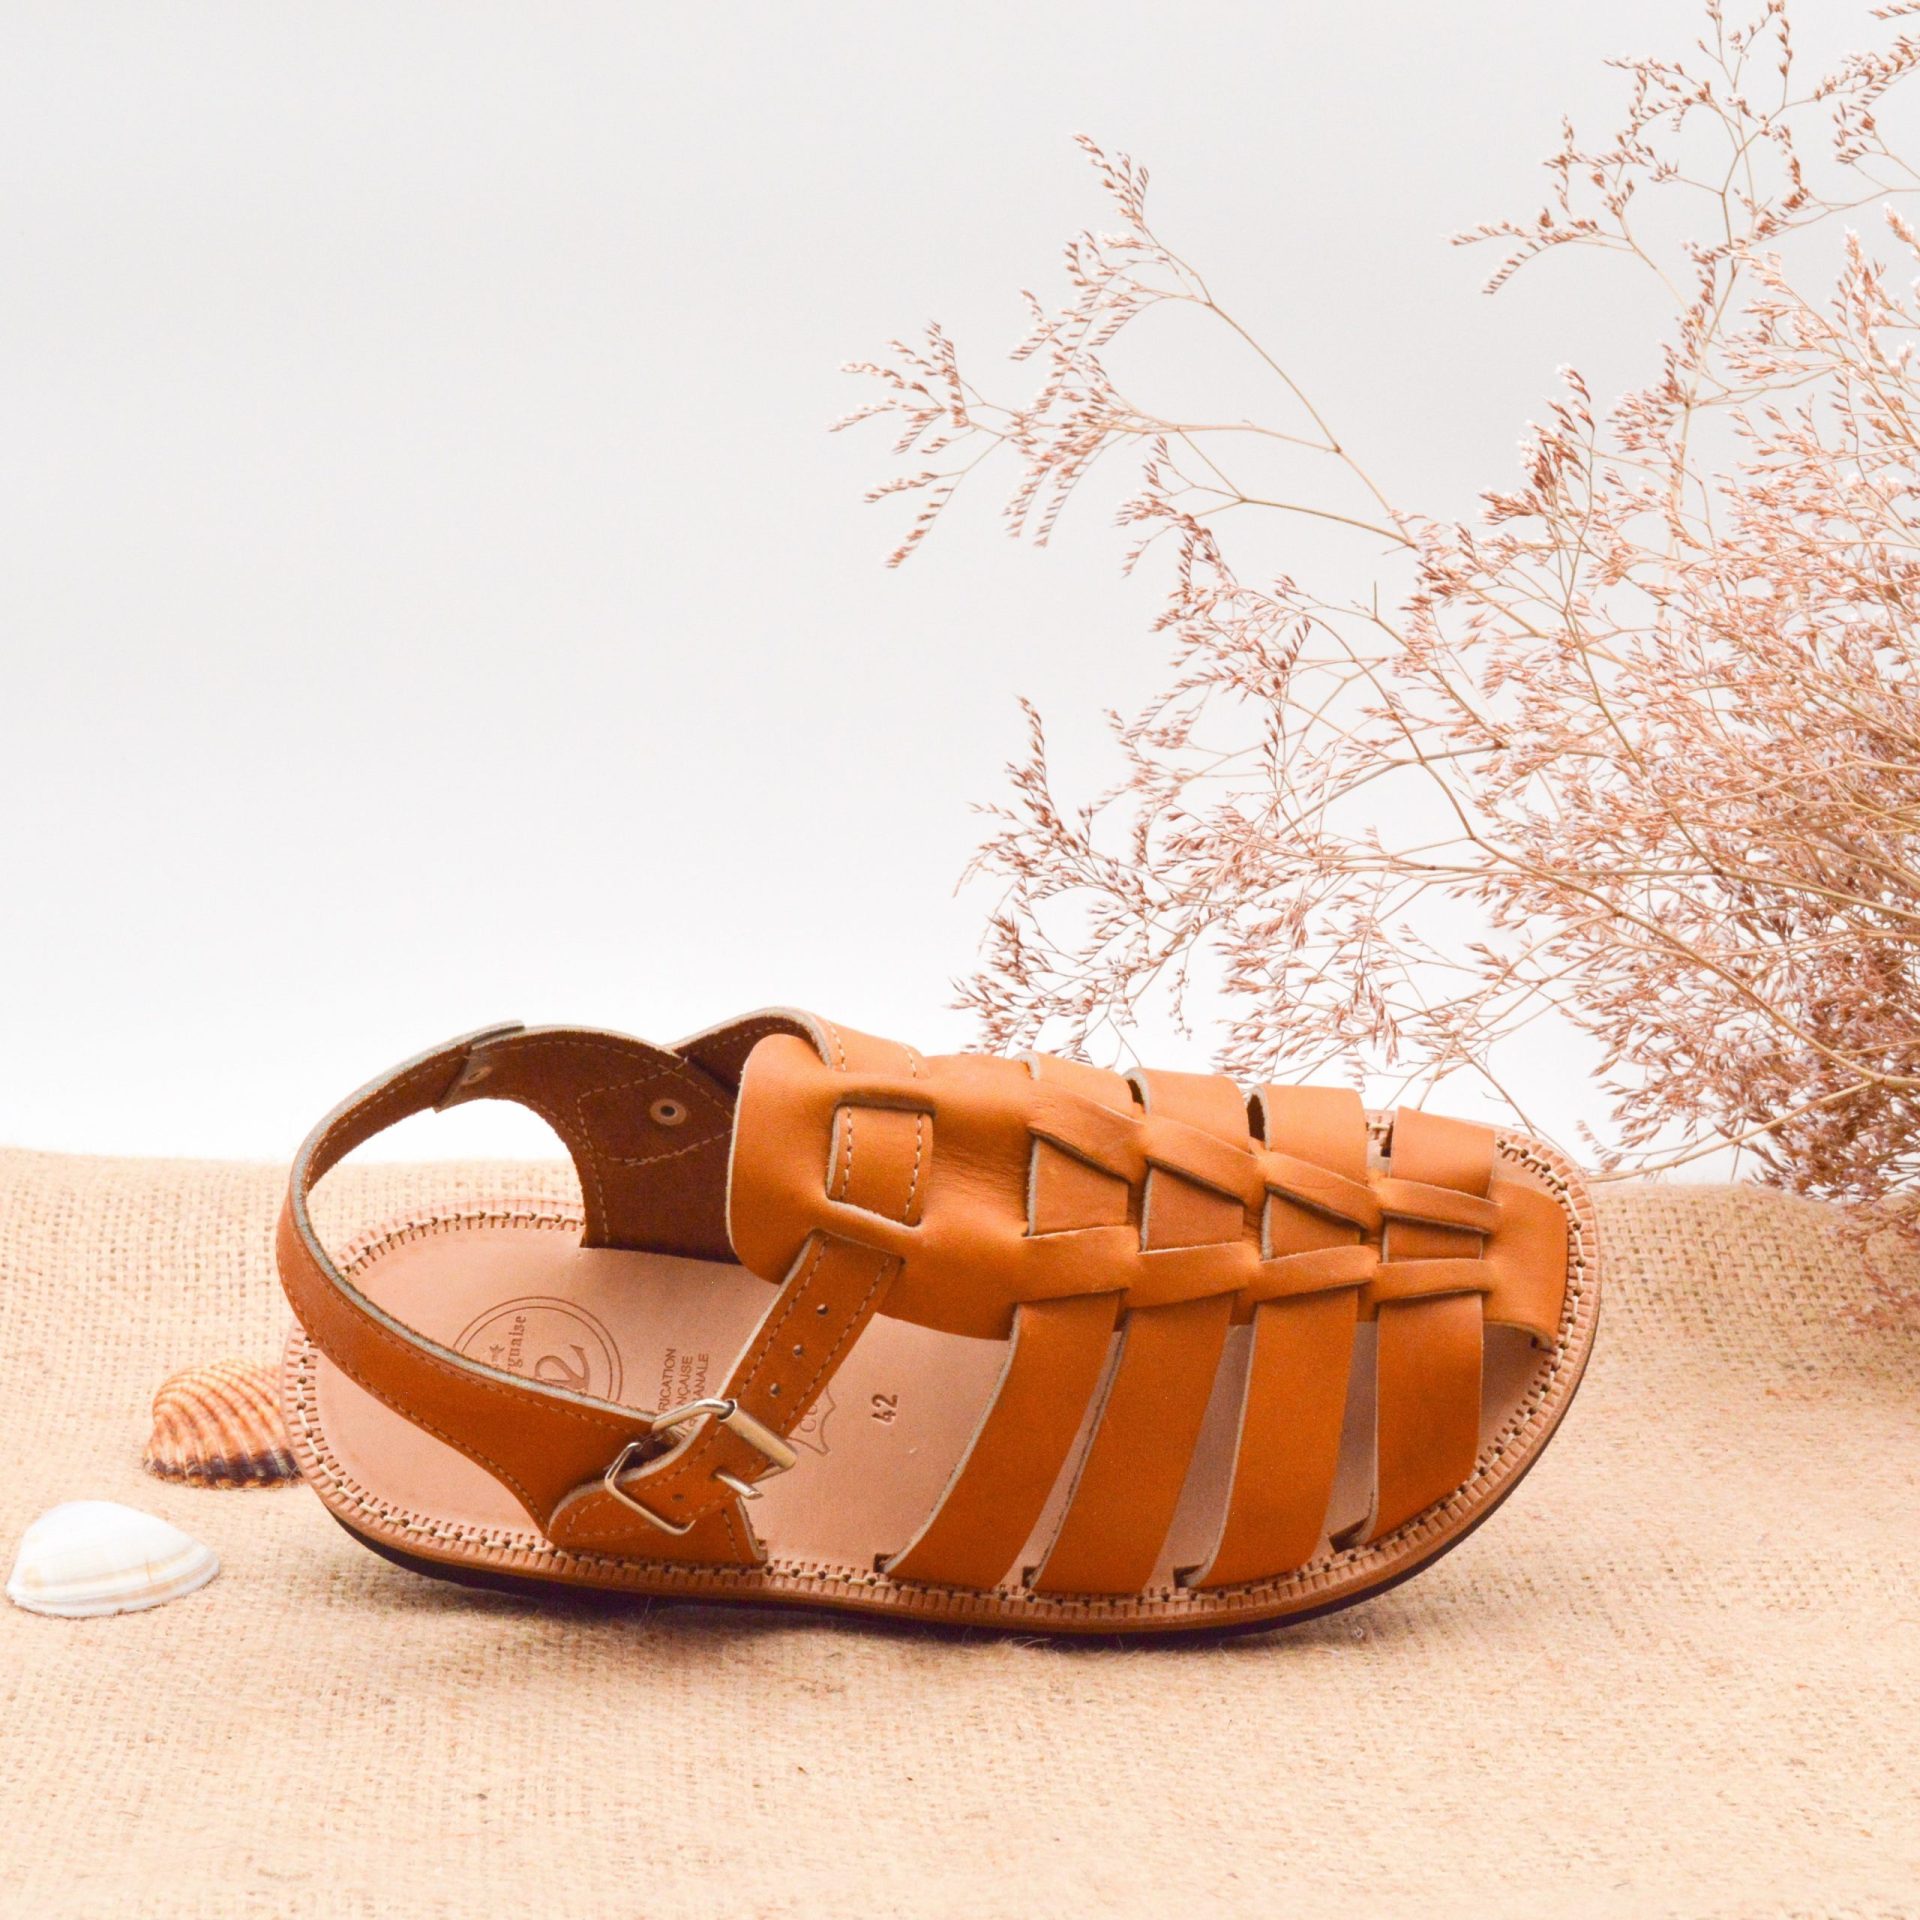 Sandales artisanales pour hommes en cuir et vraie peau végétale Chaussures Chaussures homme Sandales Sandales de sport 